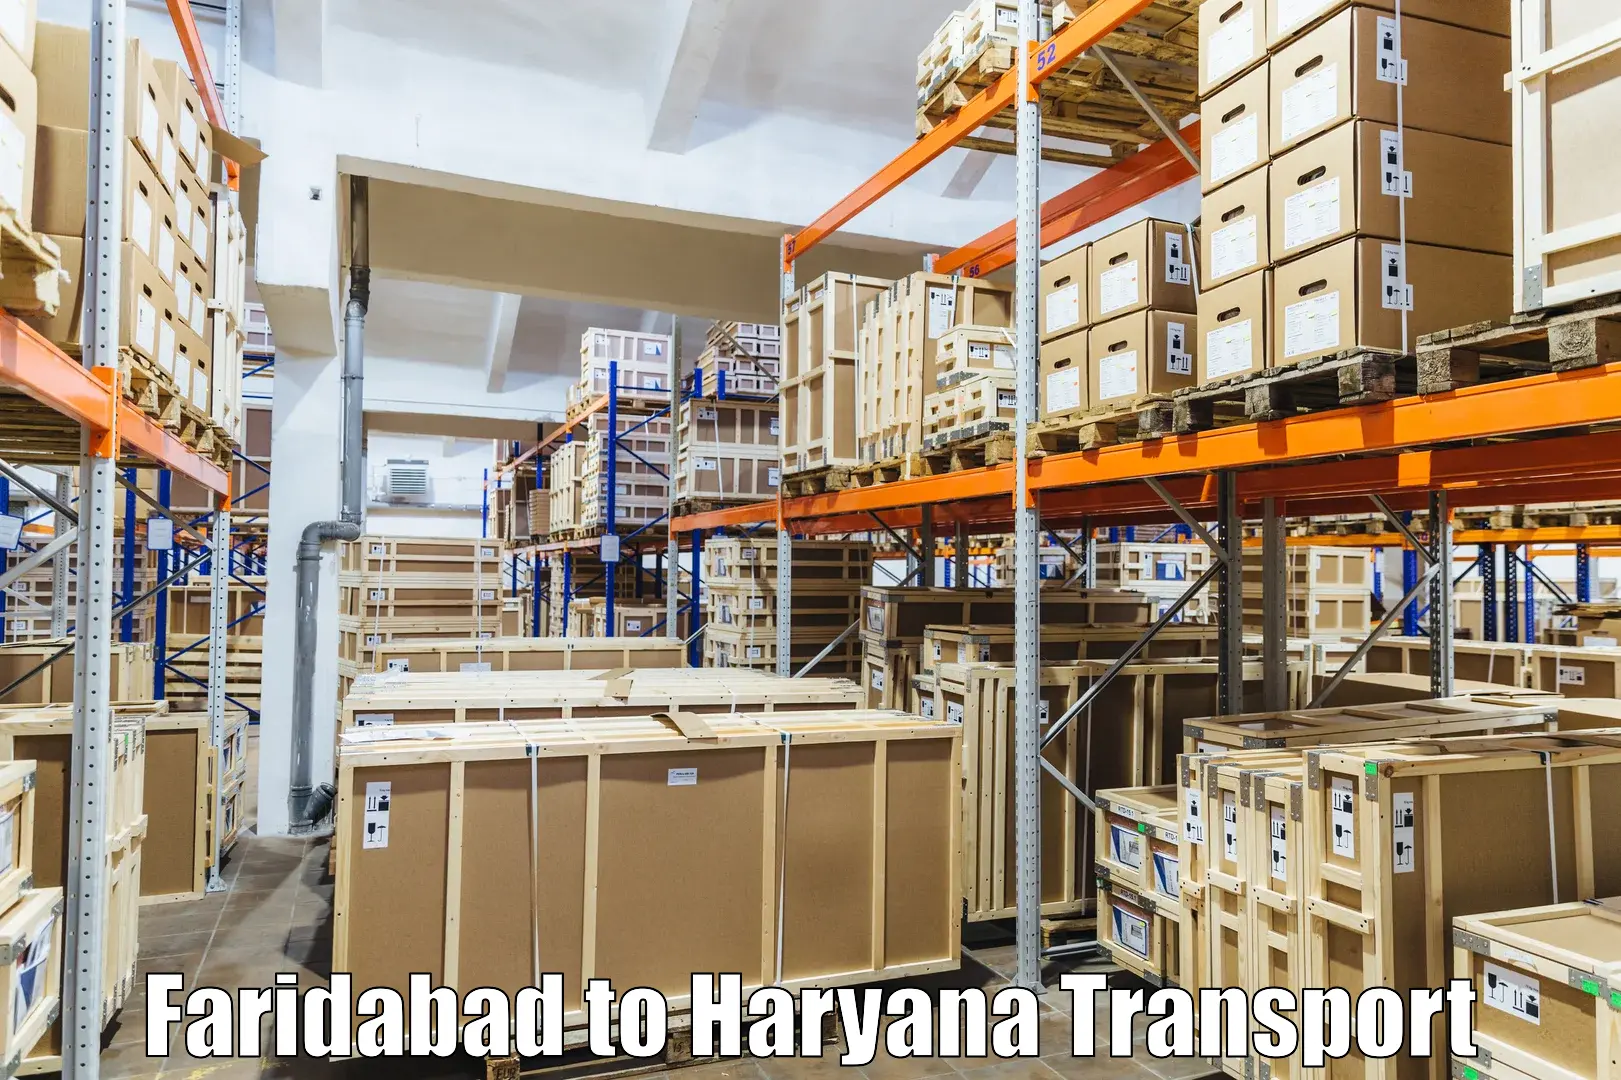 Daily parcel service transport Faridabad to Narwana